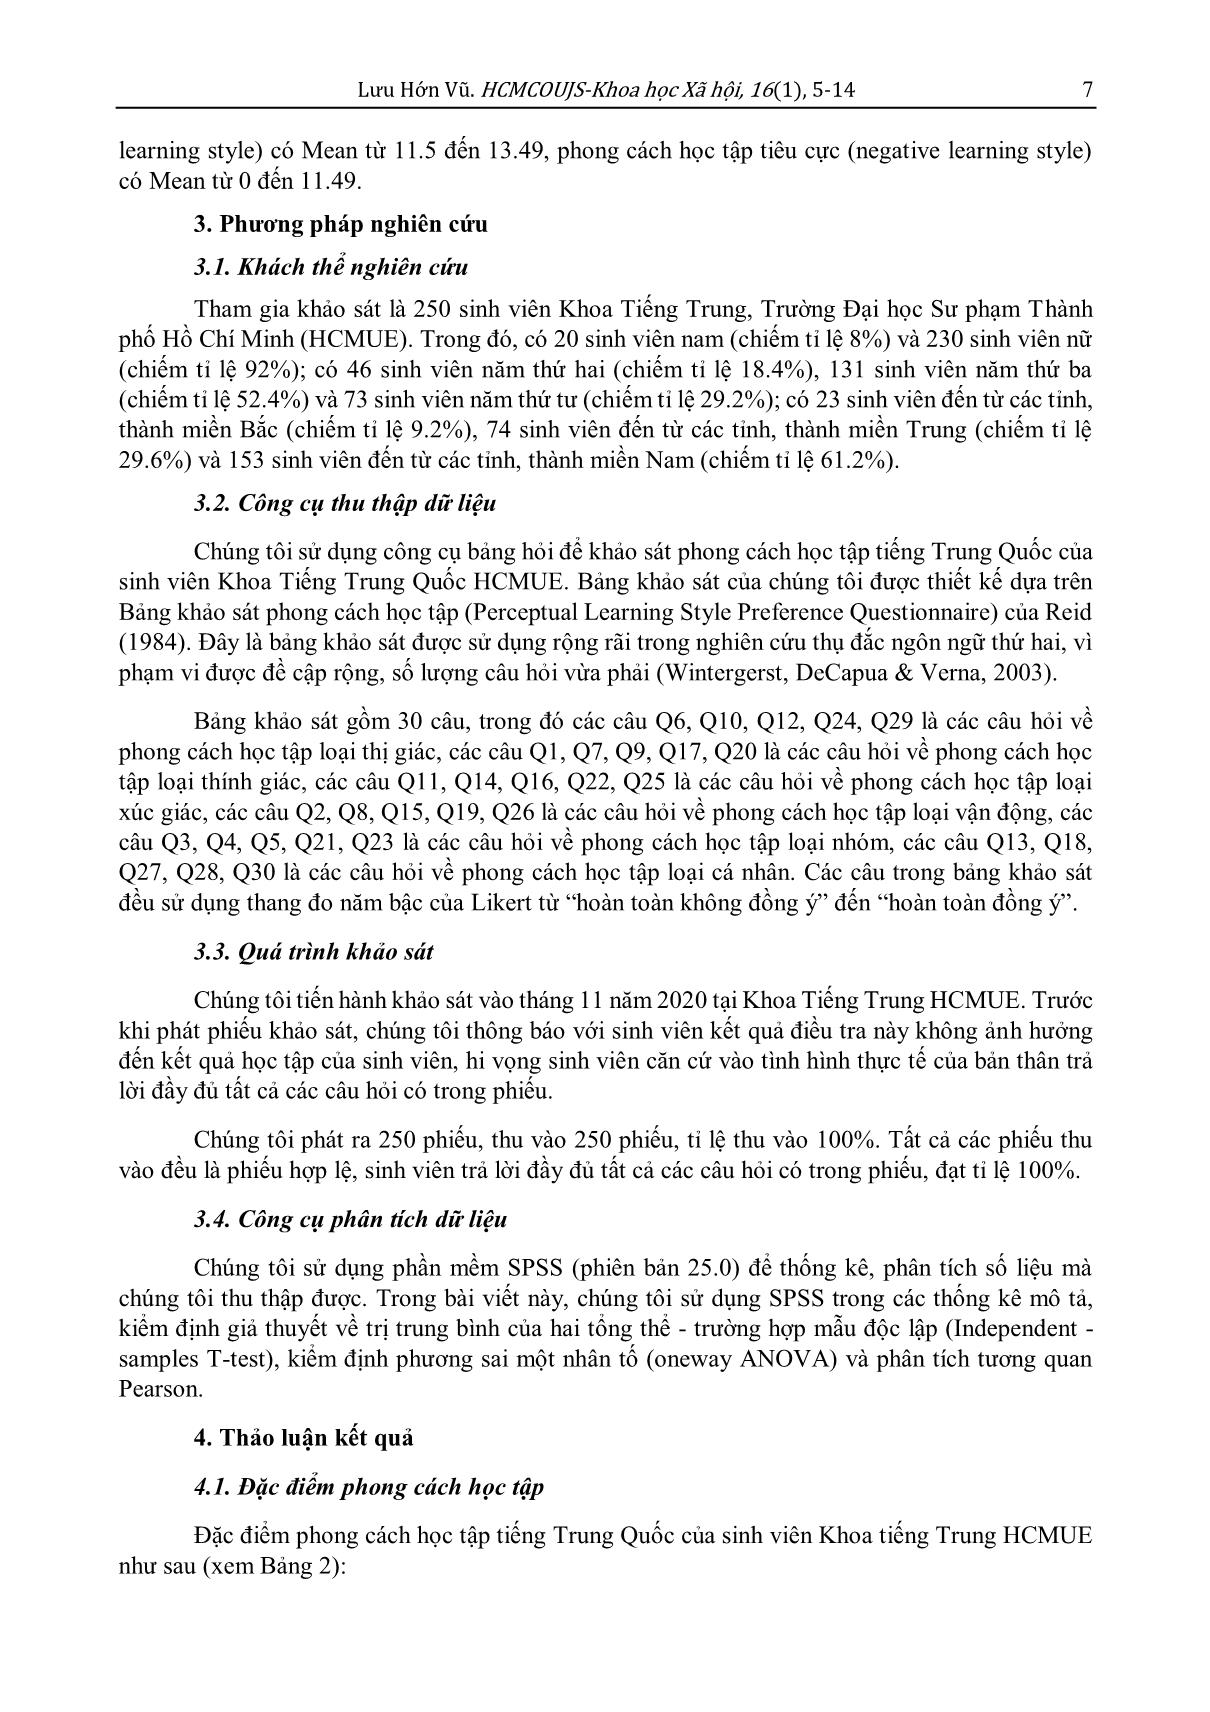 Phong cách học tập tiếng Trung Quốc của sinh viên Việt Nam: Nghiên cứu trường hợp sinh viên khoa tiếng Trung, Trường Đại học Sư phạm Thành phố Hồ Chí Minh trang 3